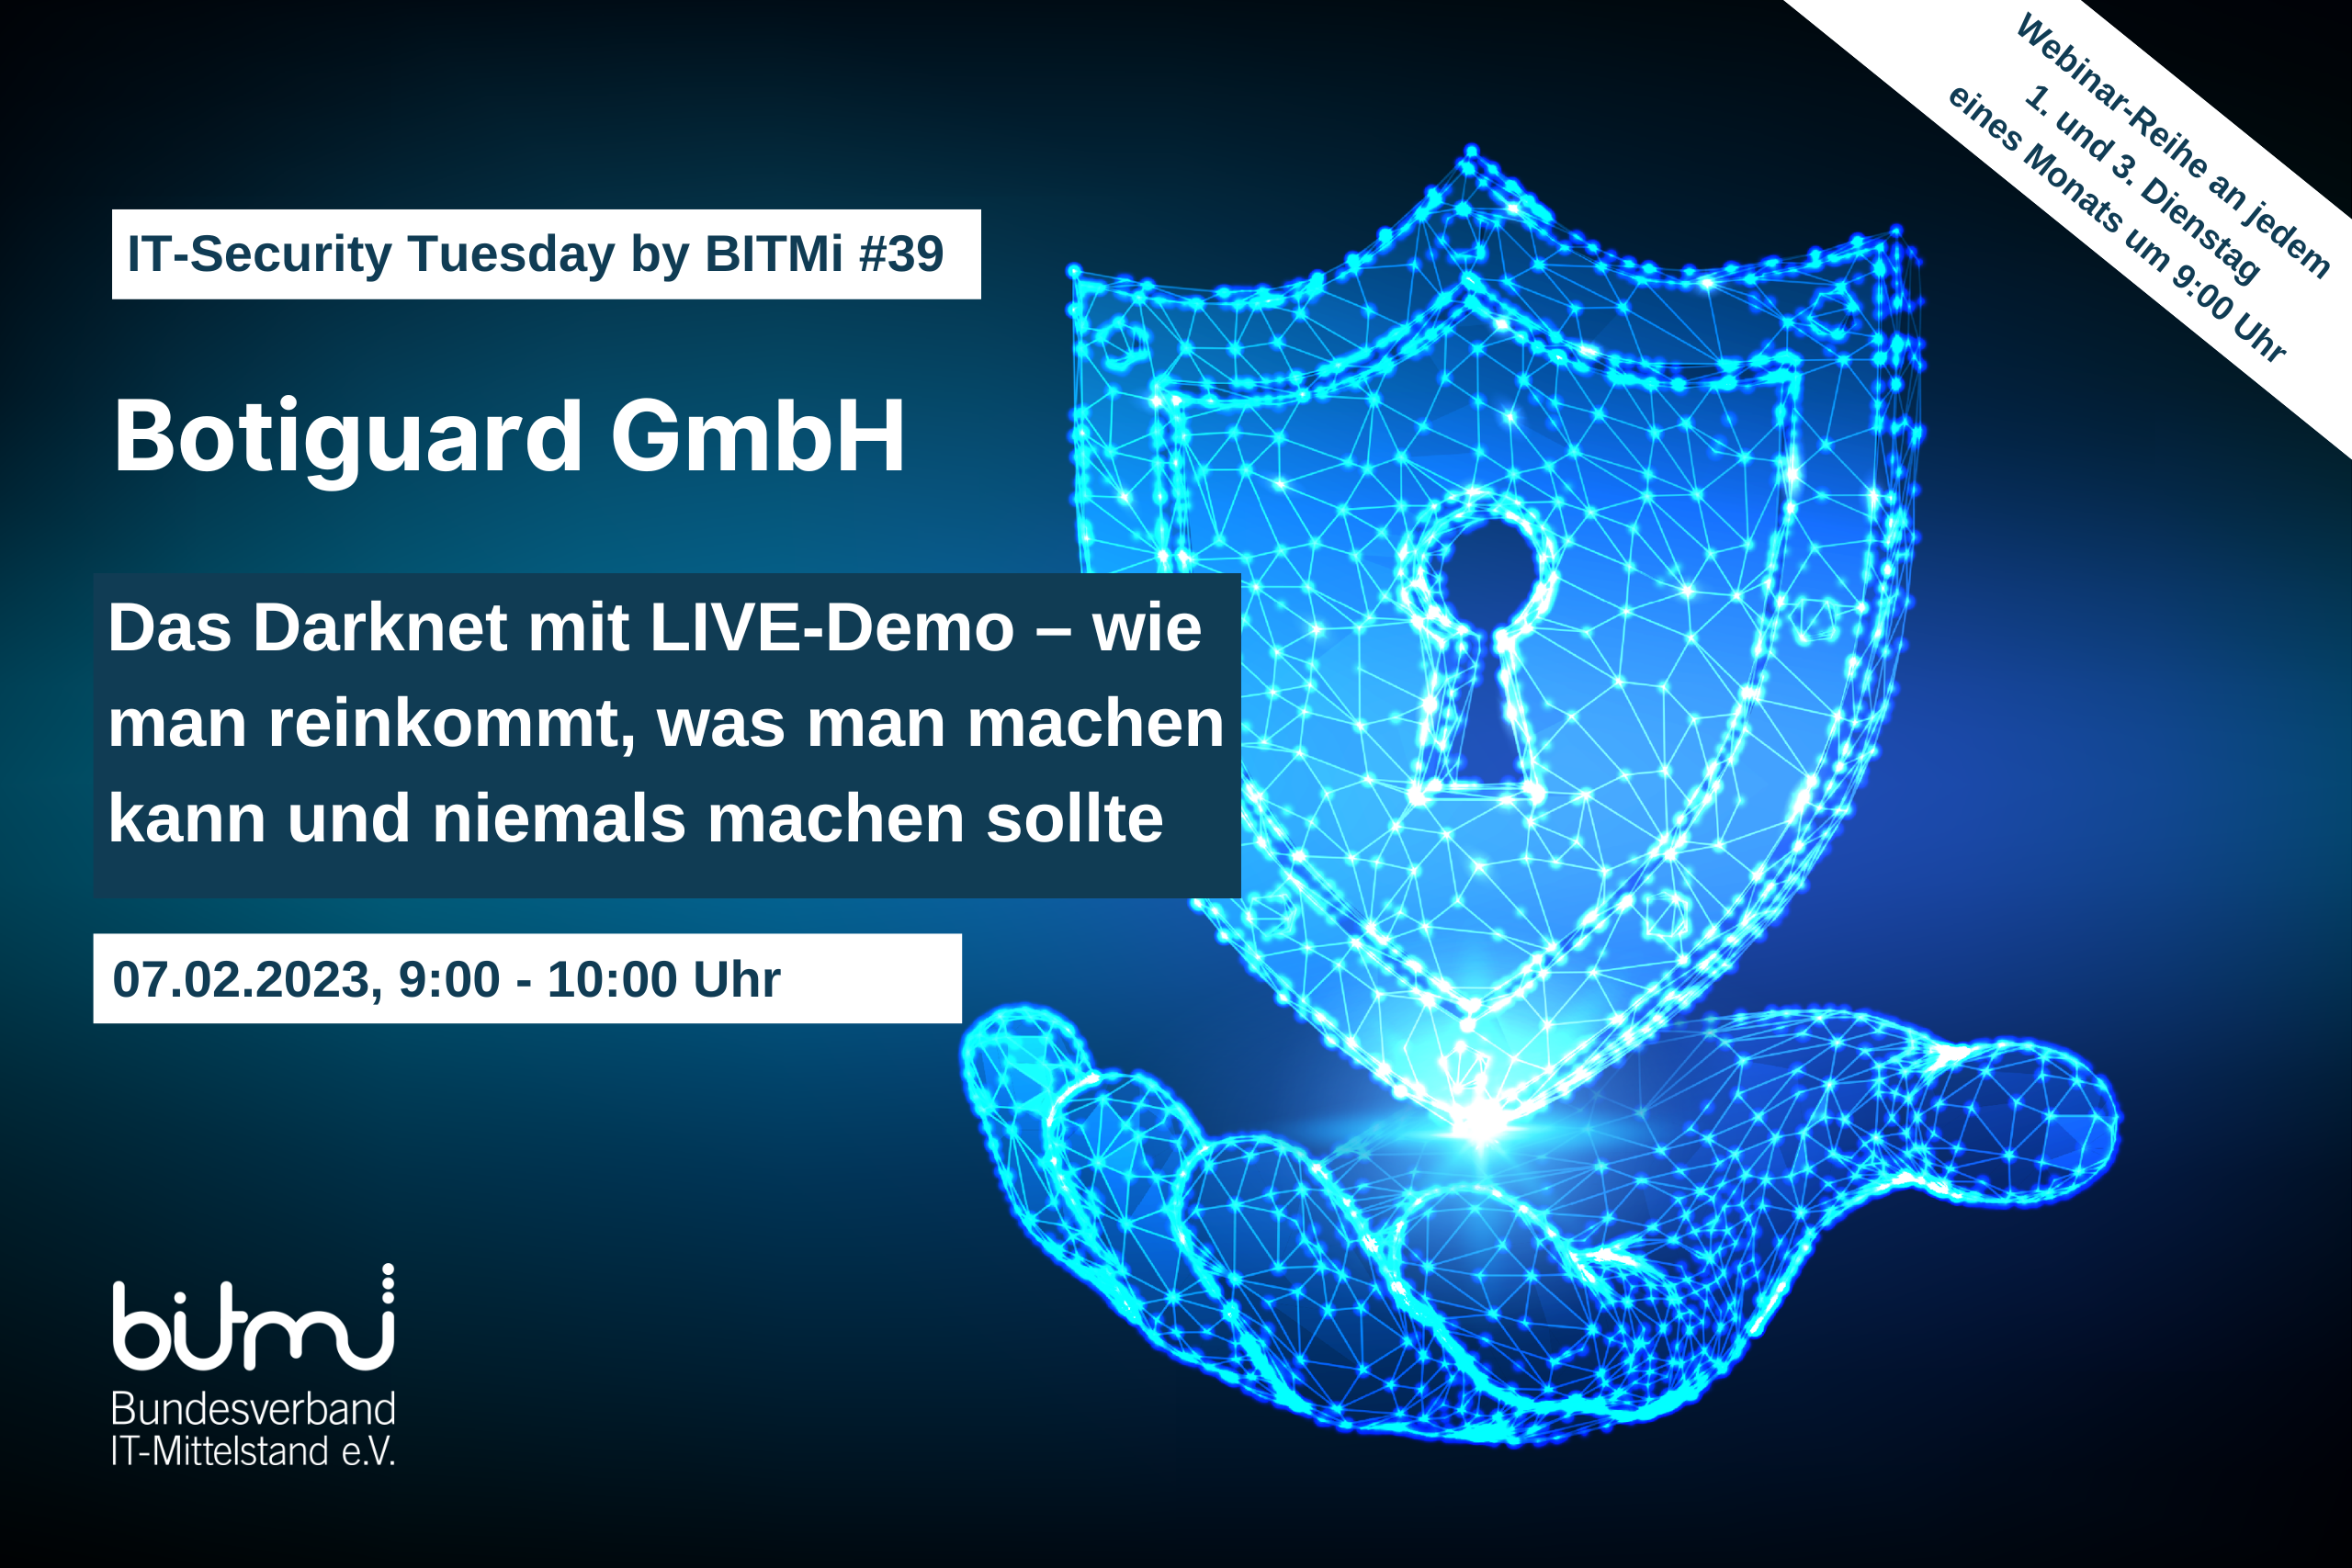 IT-Security Tuesday mit BITMi Mitglied Botiguard GmbH: "Das Darknet mit LIVE-Demo - wie man reinkommt, was man machen kann und niemals machen sollte"